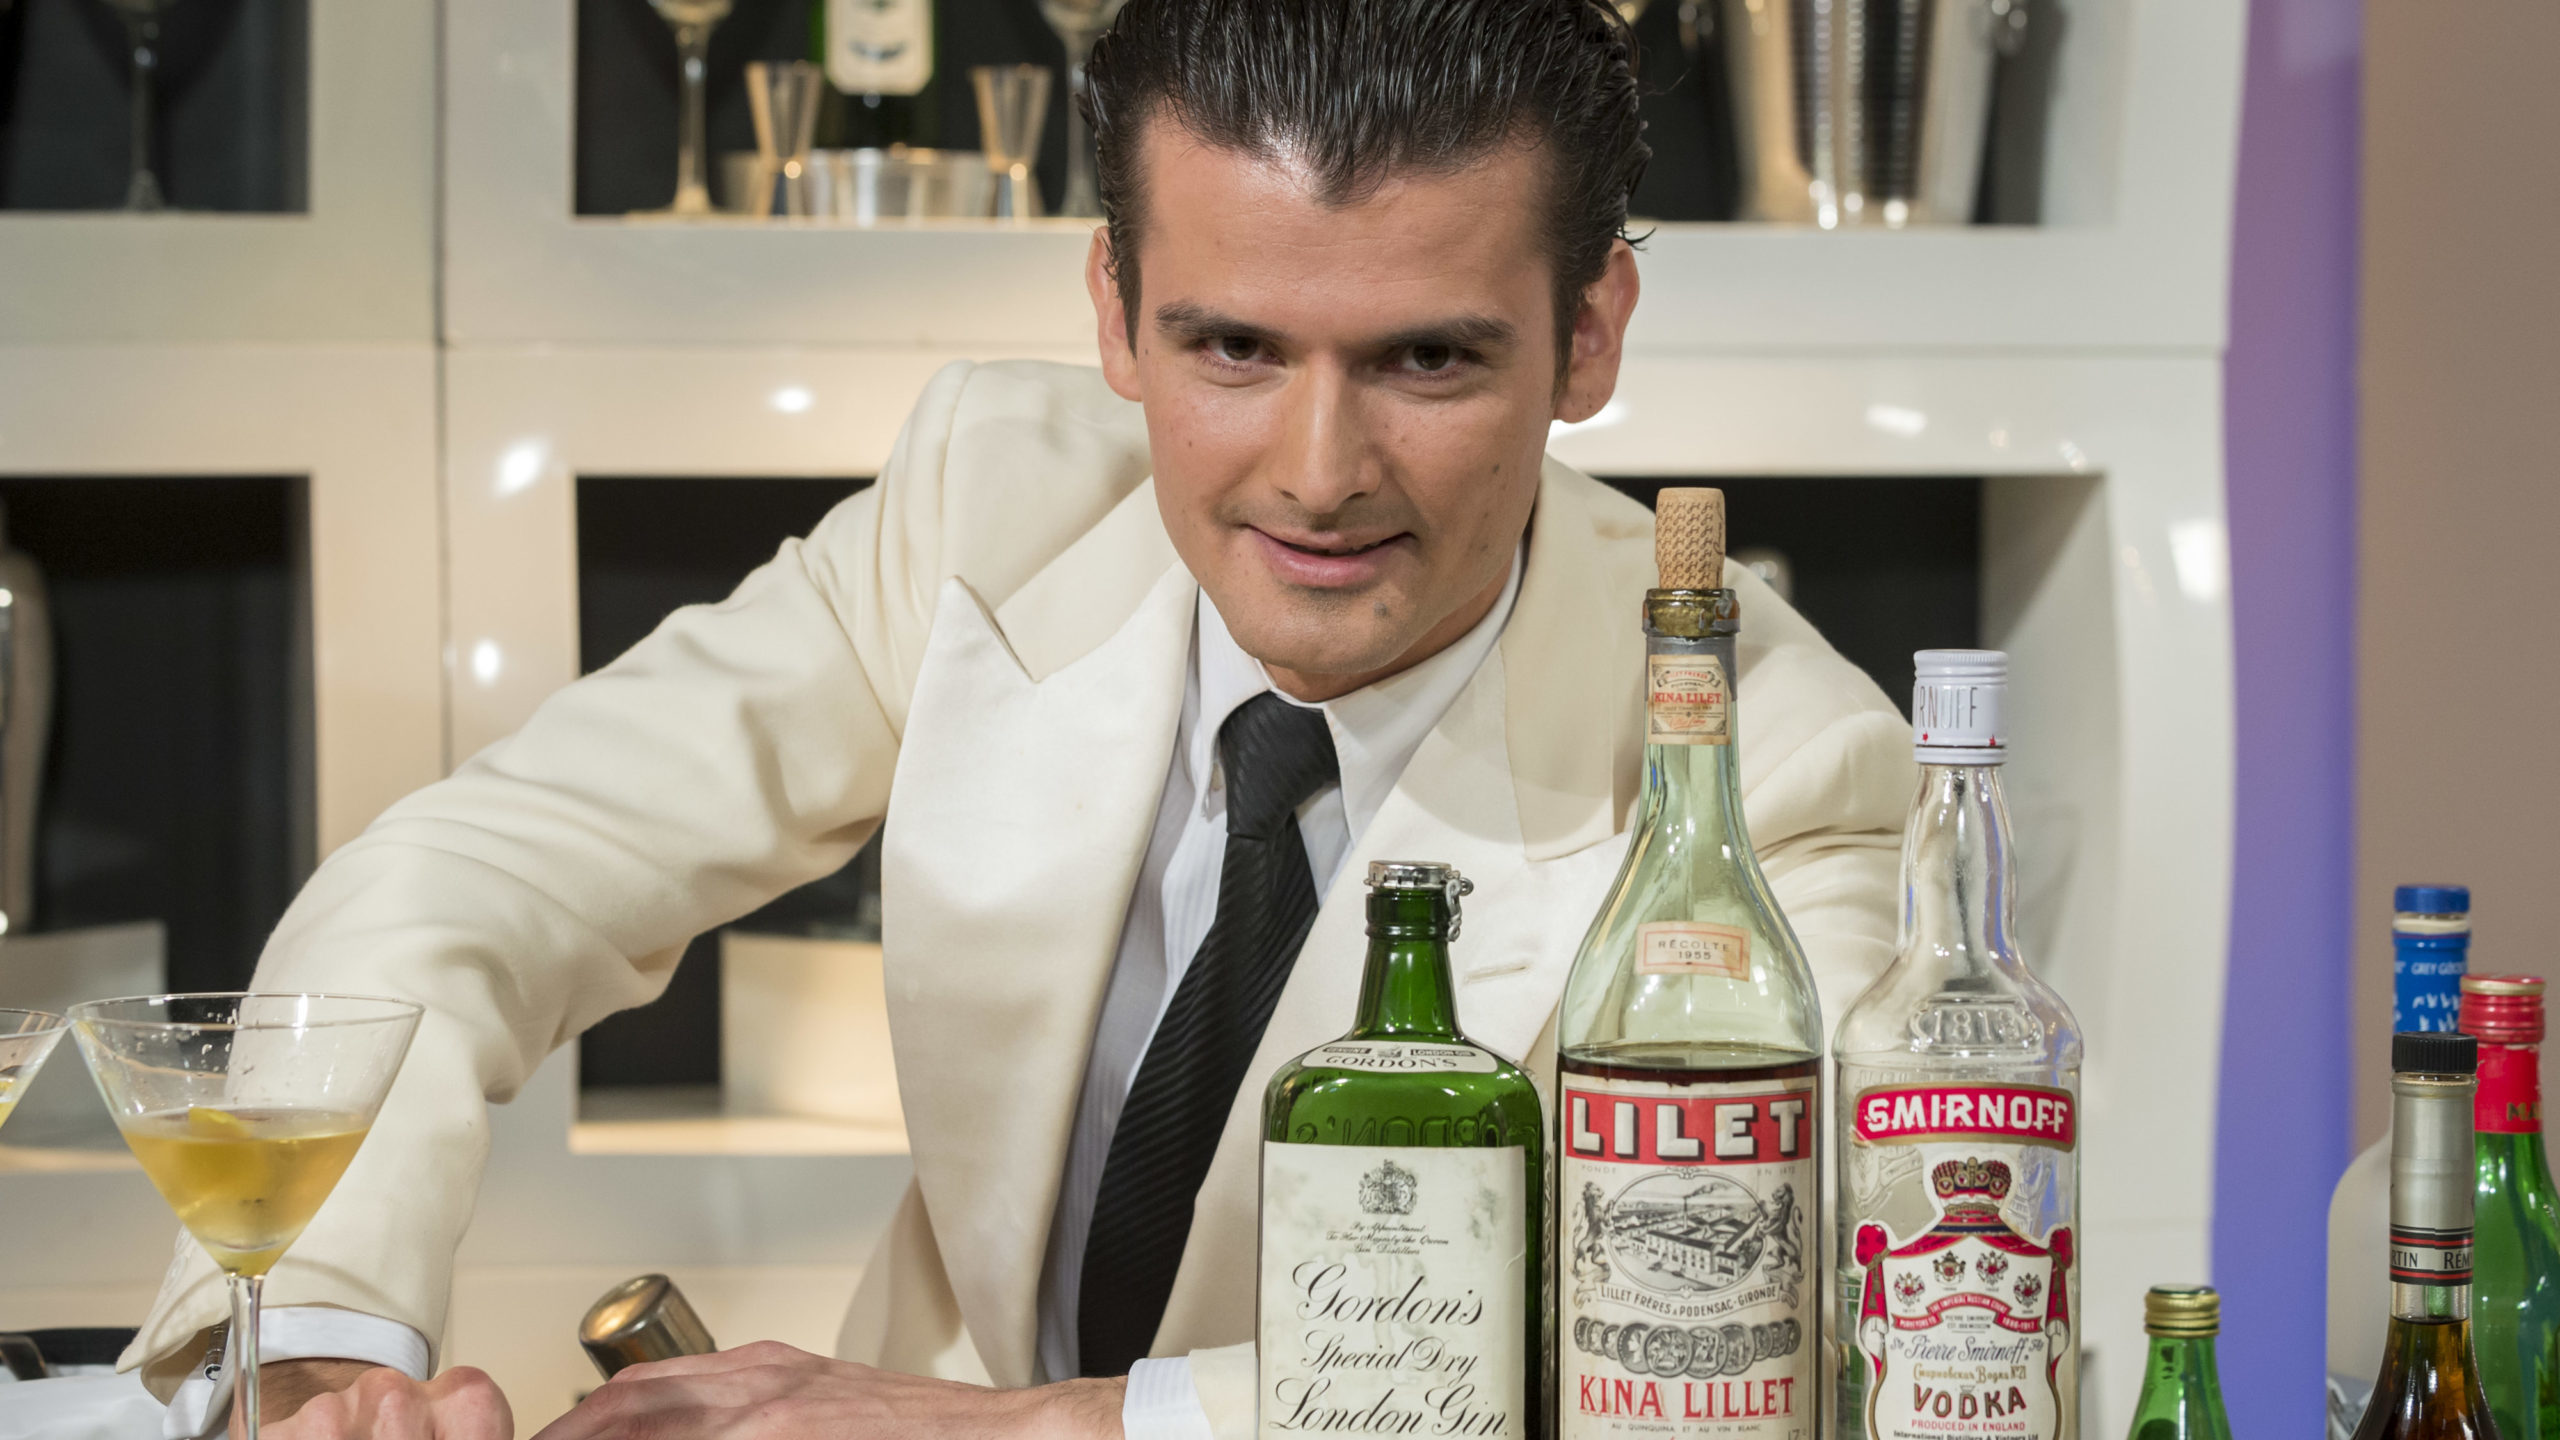 James Bond cocktail consultant Erik Lorincz. Photo by Ken McKay/Shutterstock